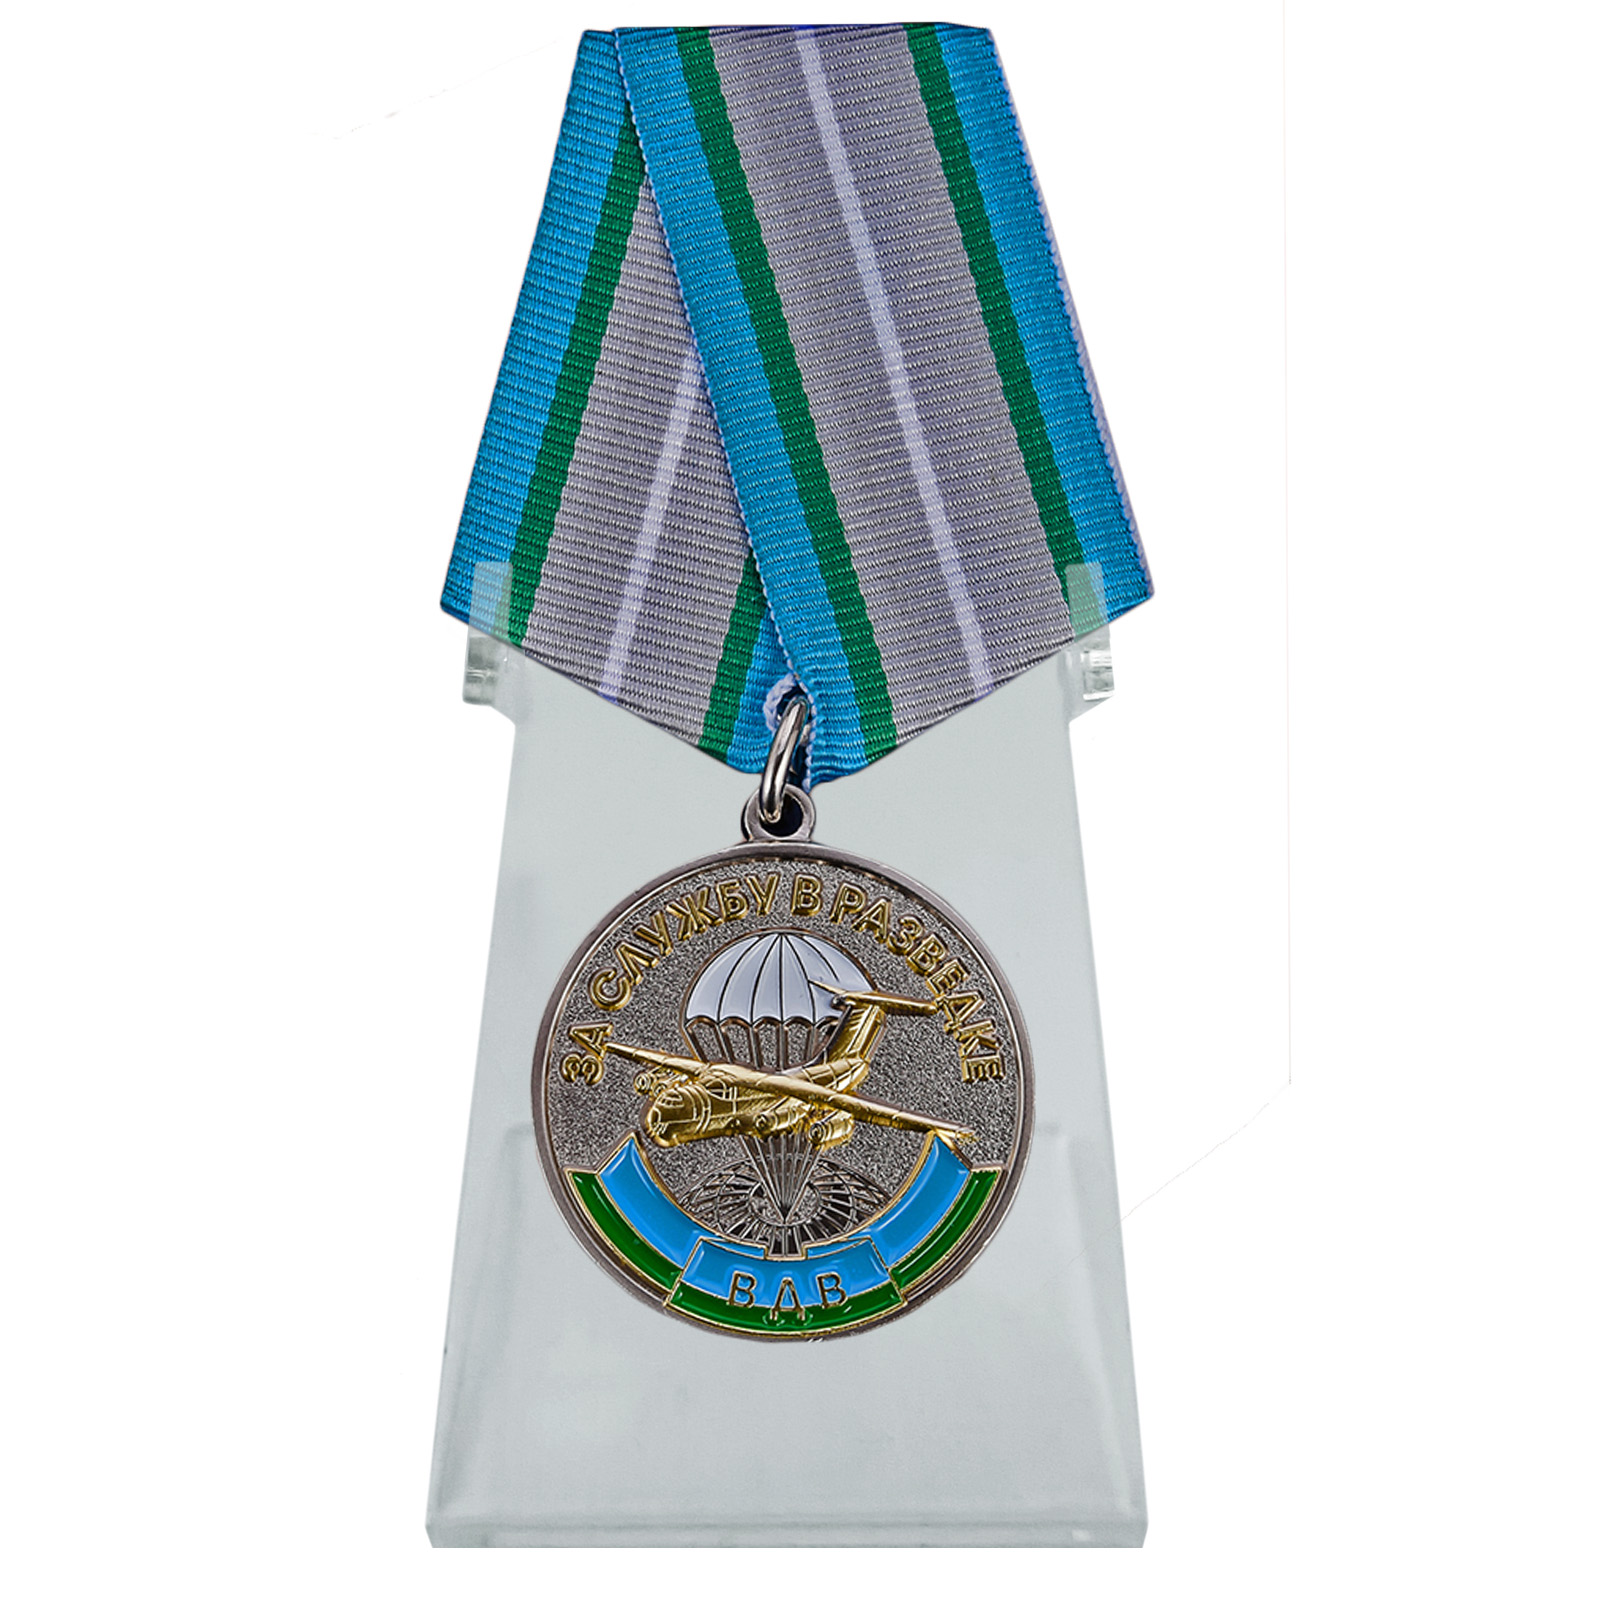 Купить медаль За службу в разведке ВДВ на подставке выгодно в подарок